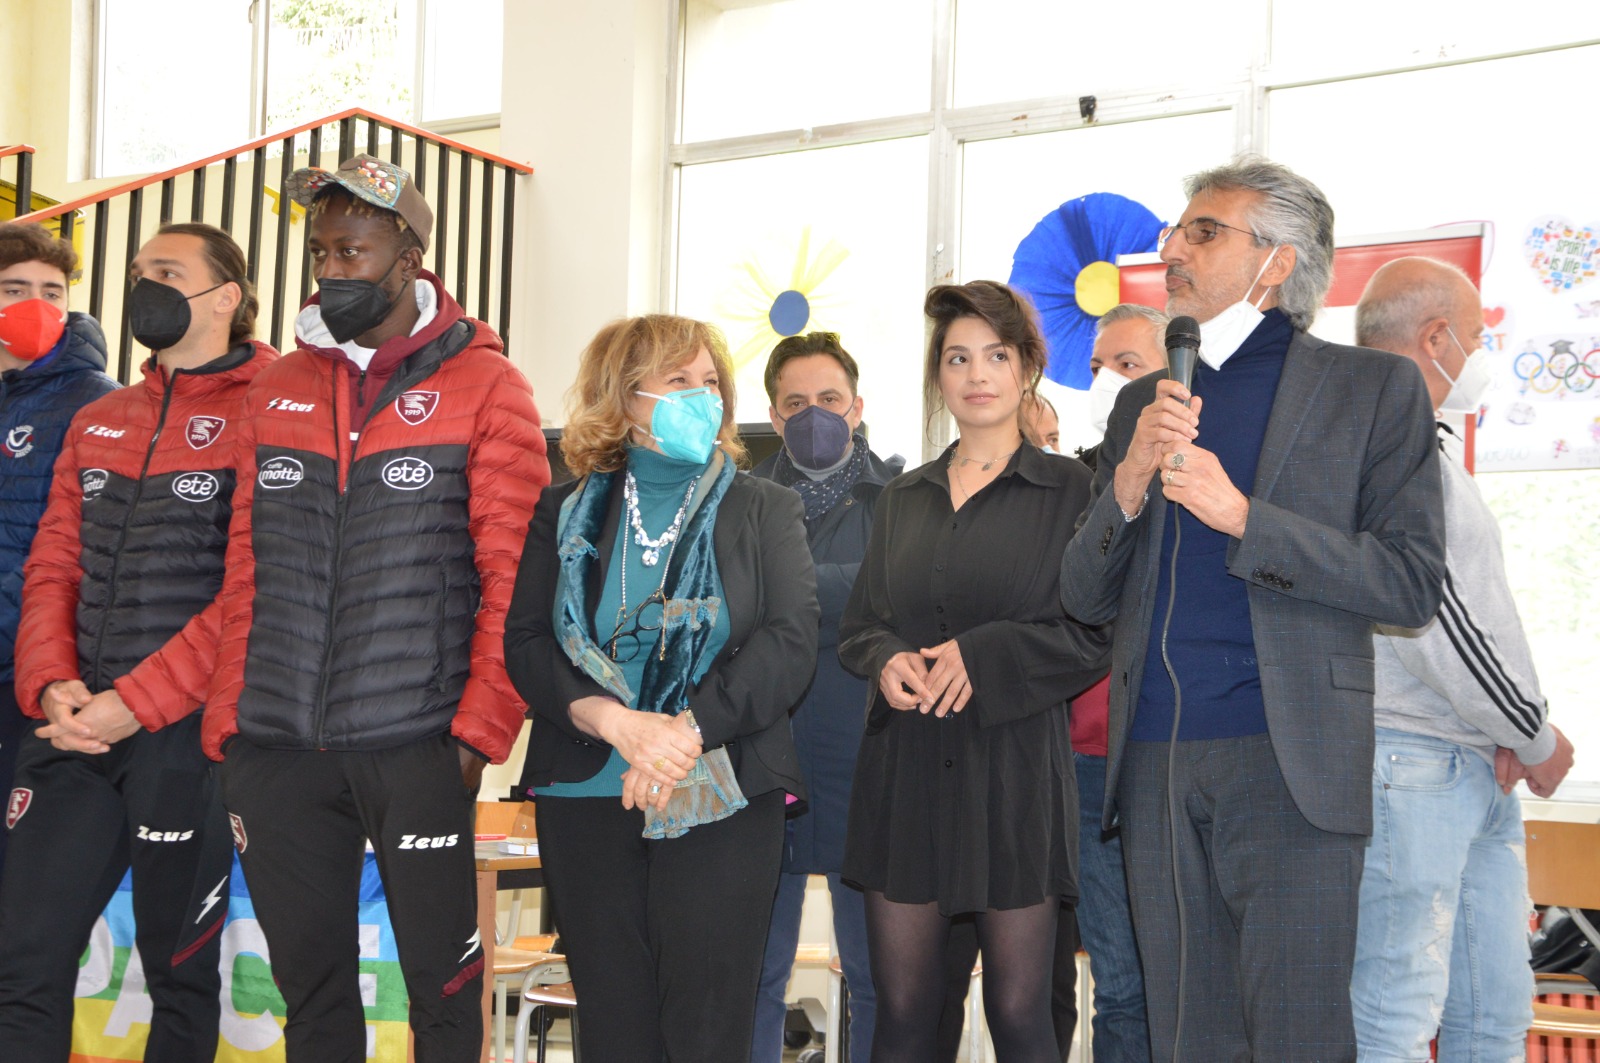 Salerno: I.C. “Tasso”, al plesso “Rodari” grande partecipazione per “Adotta una Scuola”